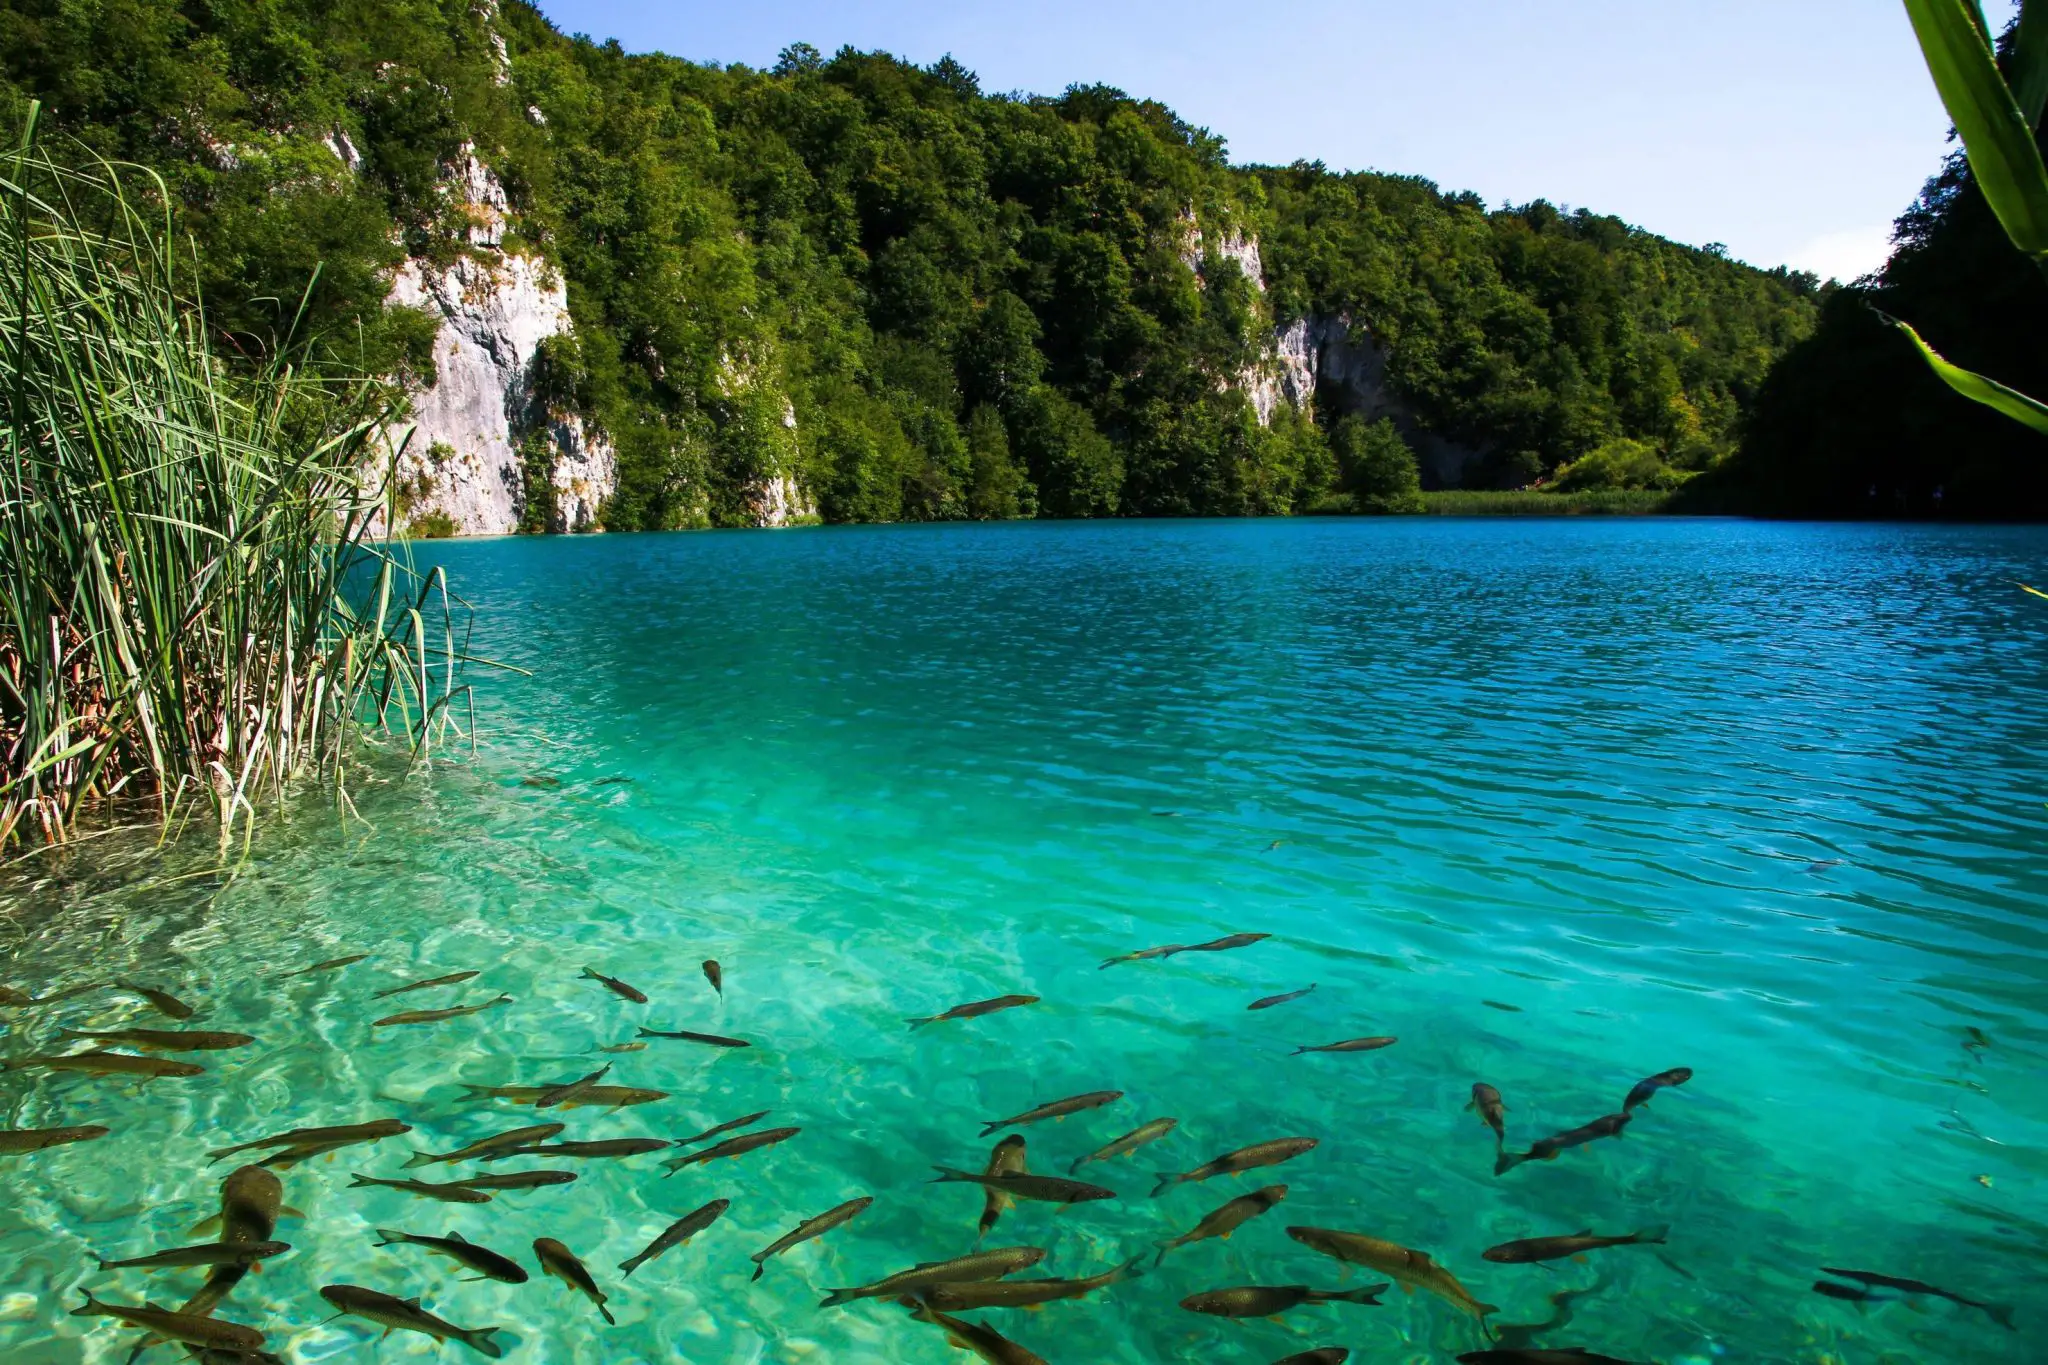 Parcul National Lacurile Plitvice. Pledoaria naturii in inima Croatiei